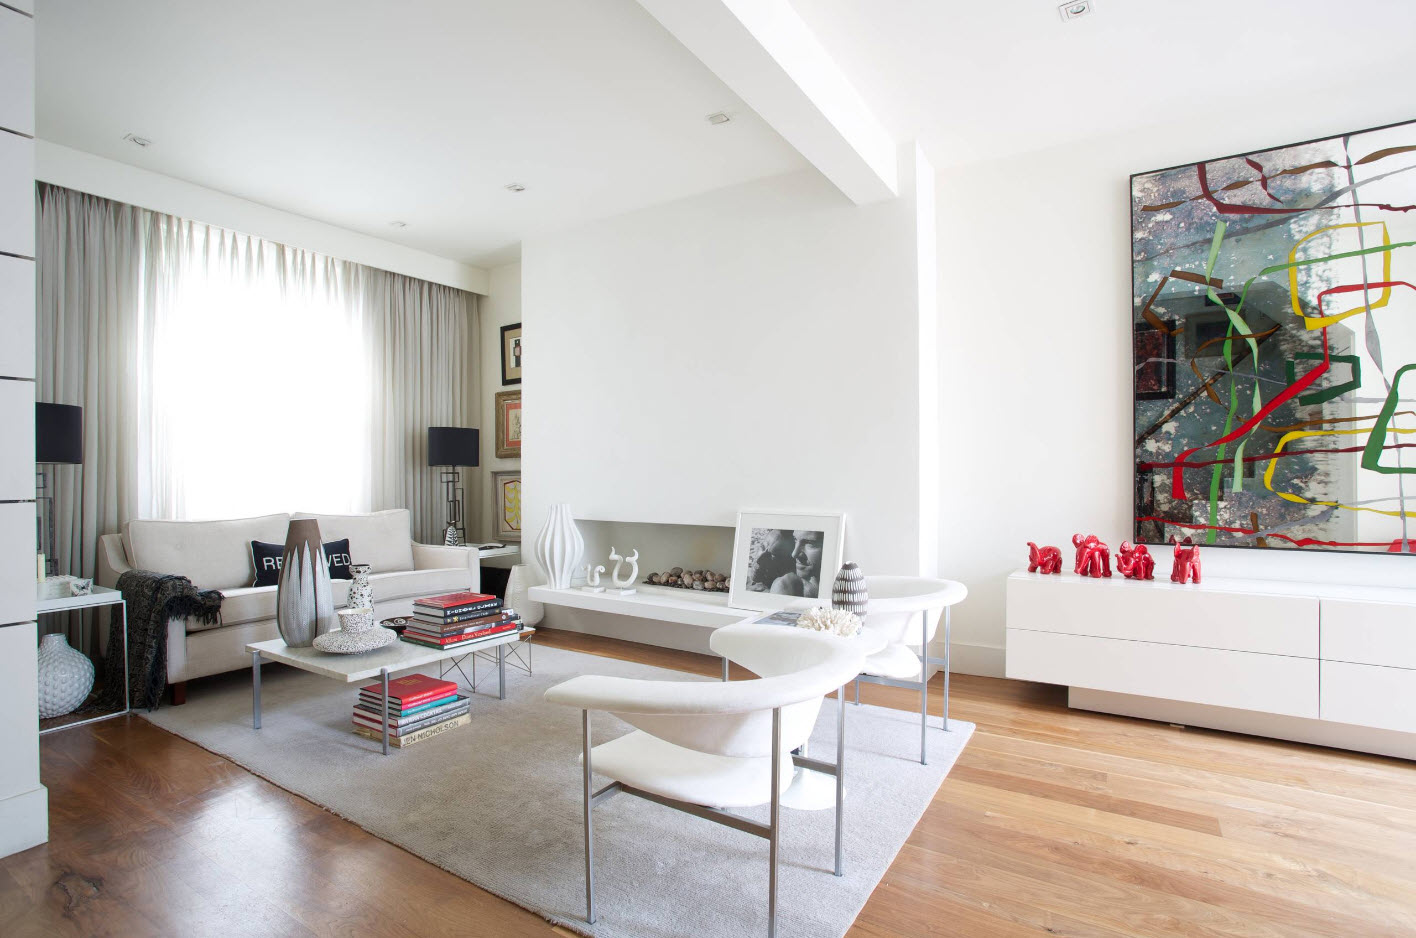 Pohovka a pár pohodlných křesel - optimální sada nábytku pro obývací pokoj